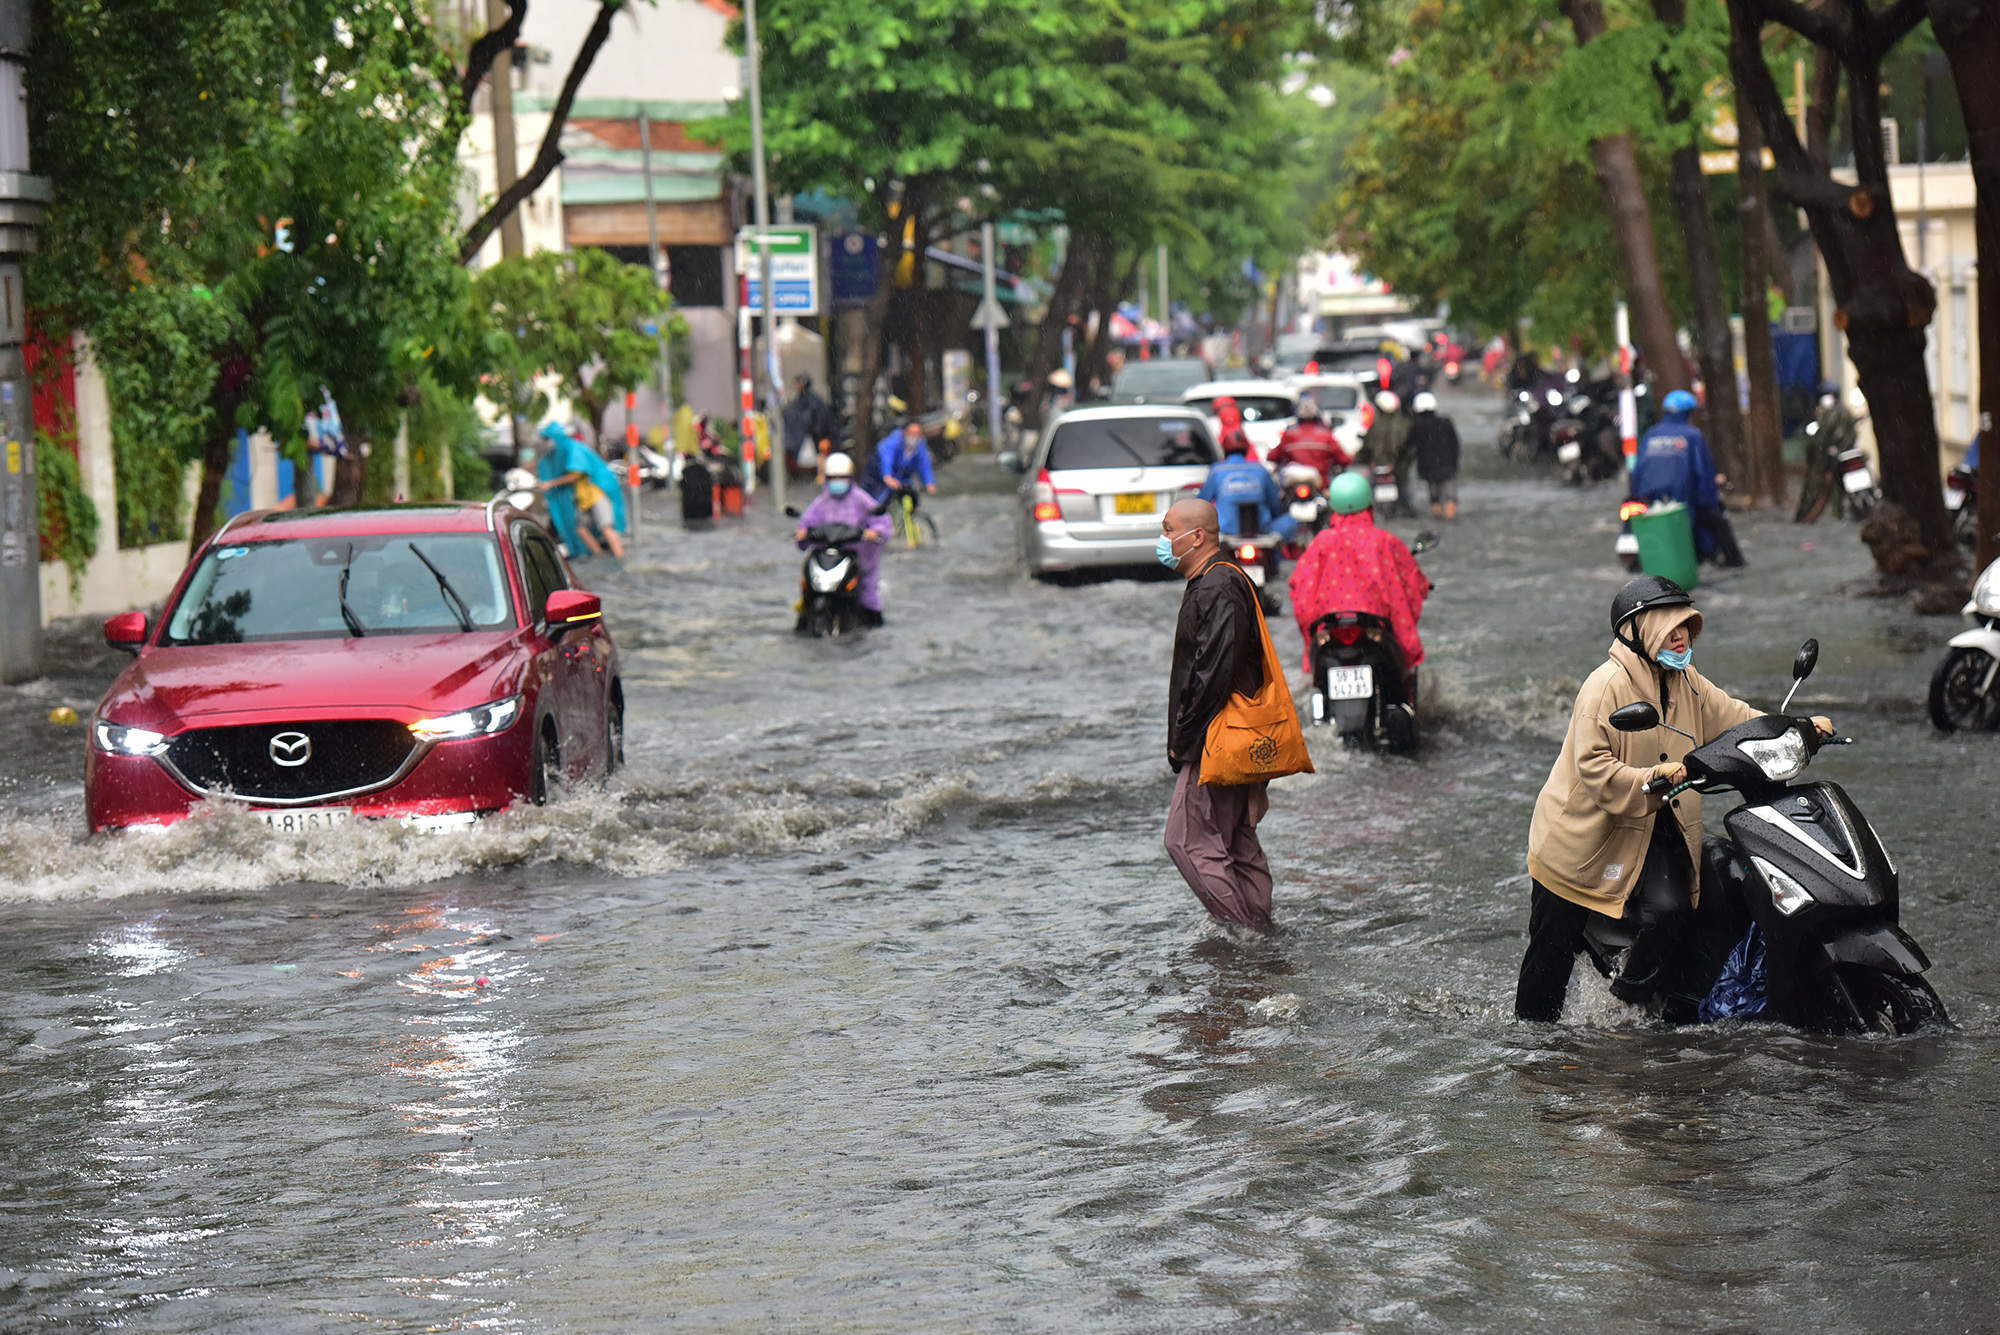 Từ khoảng 16h chiều 13/5, cơn mưa lớn xảy ra trên diện rộng tại TP.HCM. Nhiều tuyến đường ở khu vực TP Thủ Đức, quận Bình Thạnh bị ngập nặng.